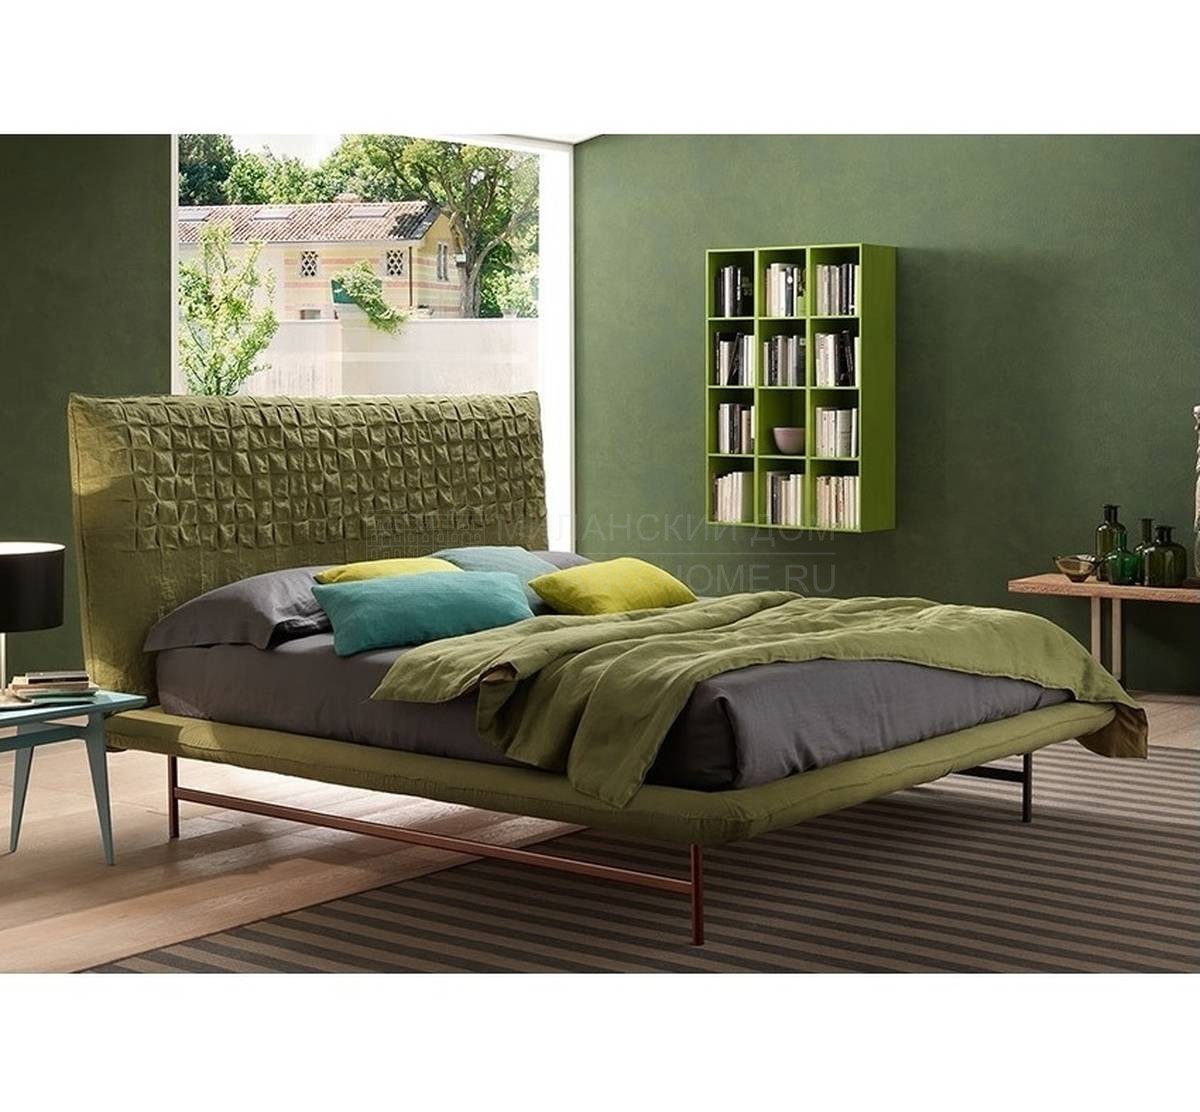 Двуспальная кровать Sheen Light из Италии фабрики BOLZAN